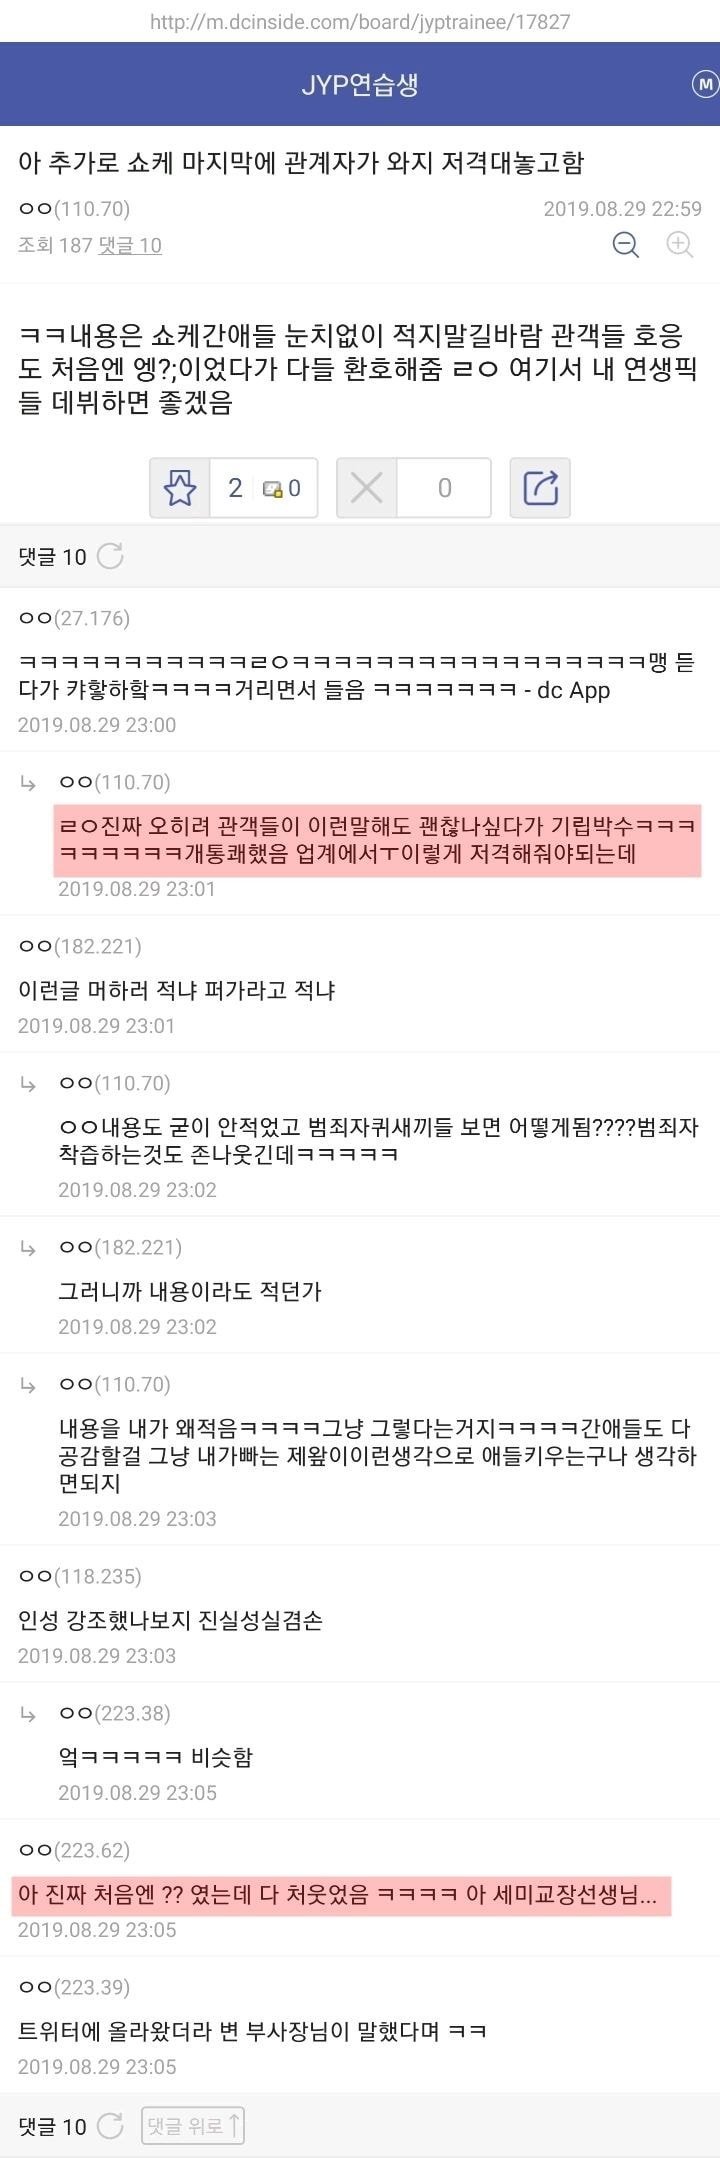 Вице-президент JYP открыто раскритиковал BIGBANG на шоукейсе для стажеров агентства 